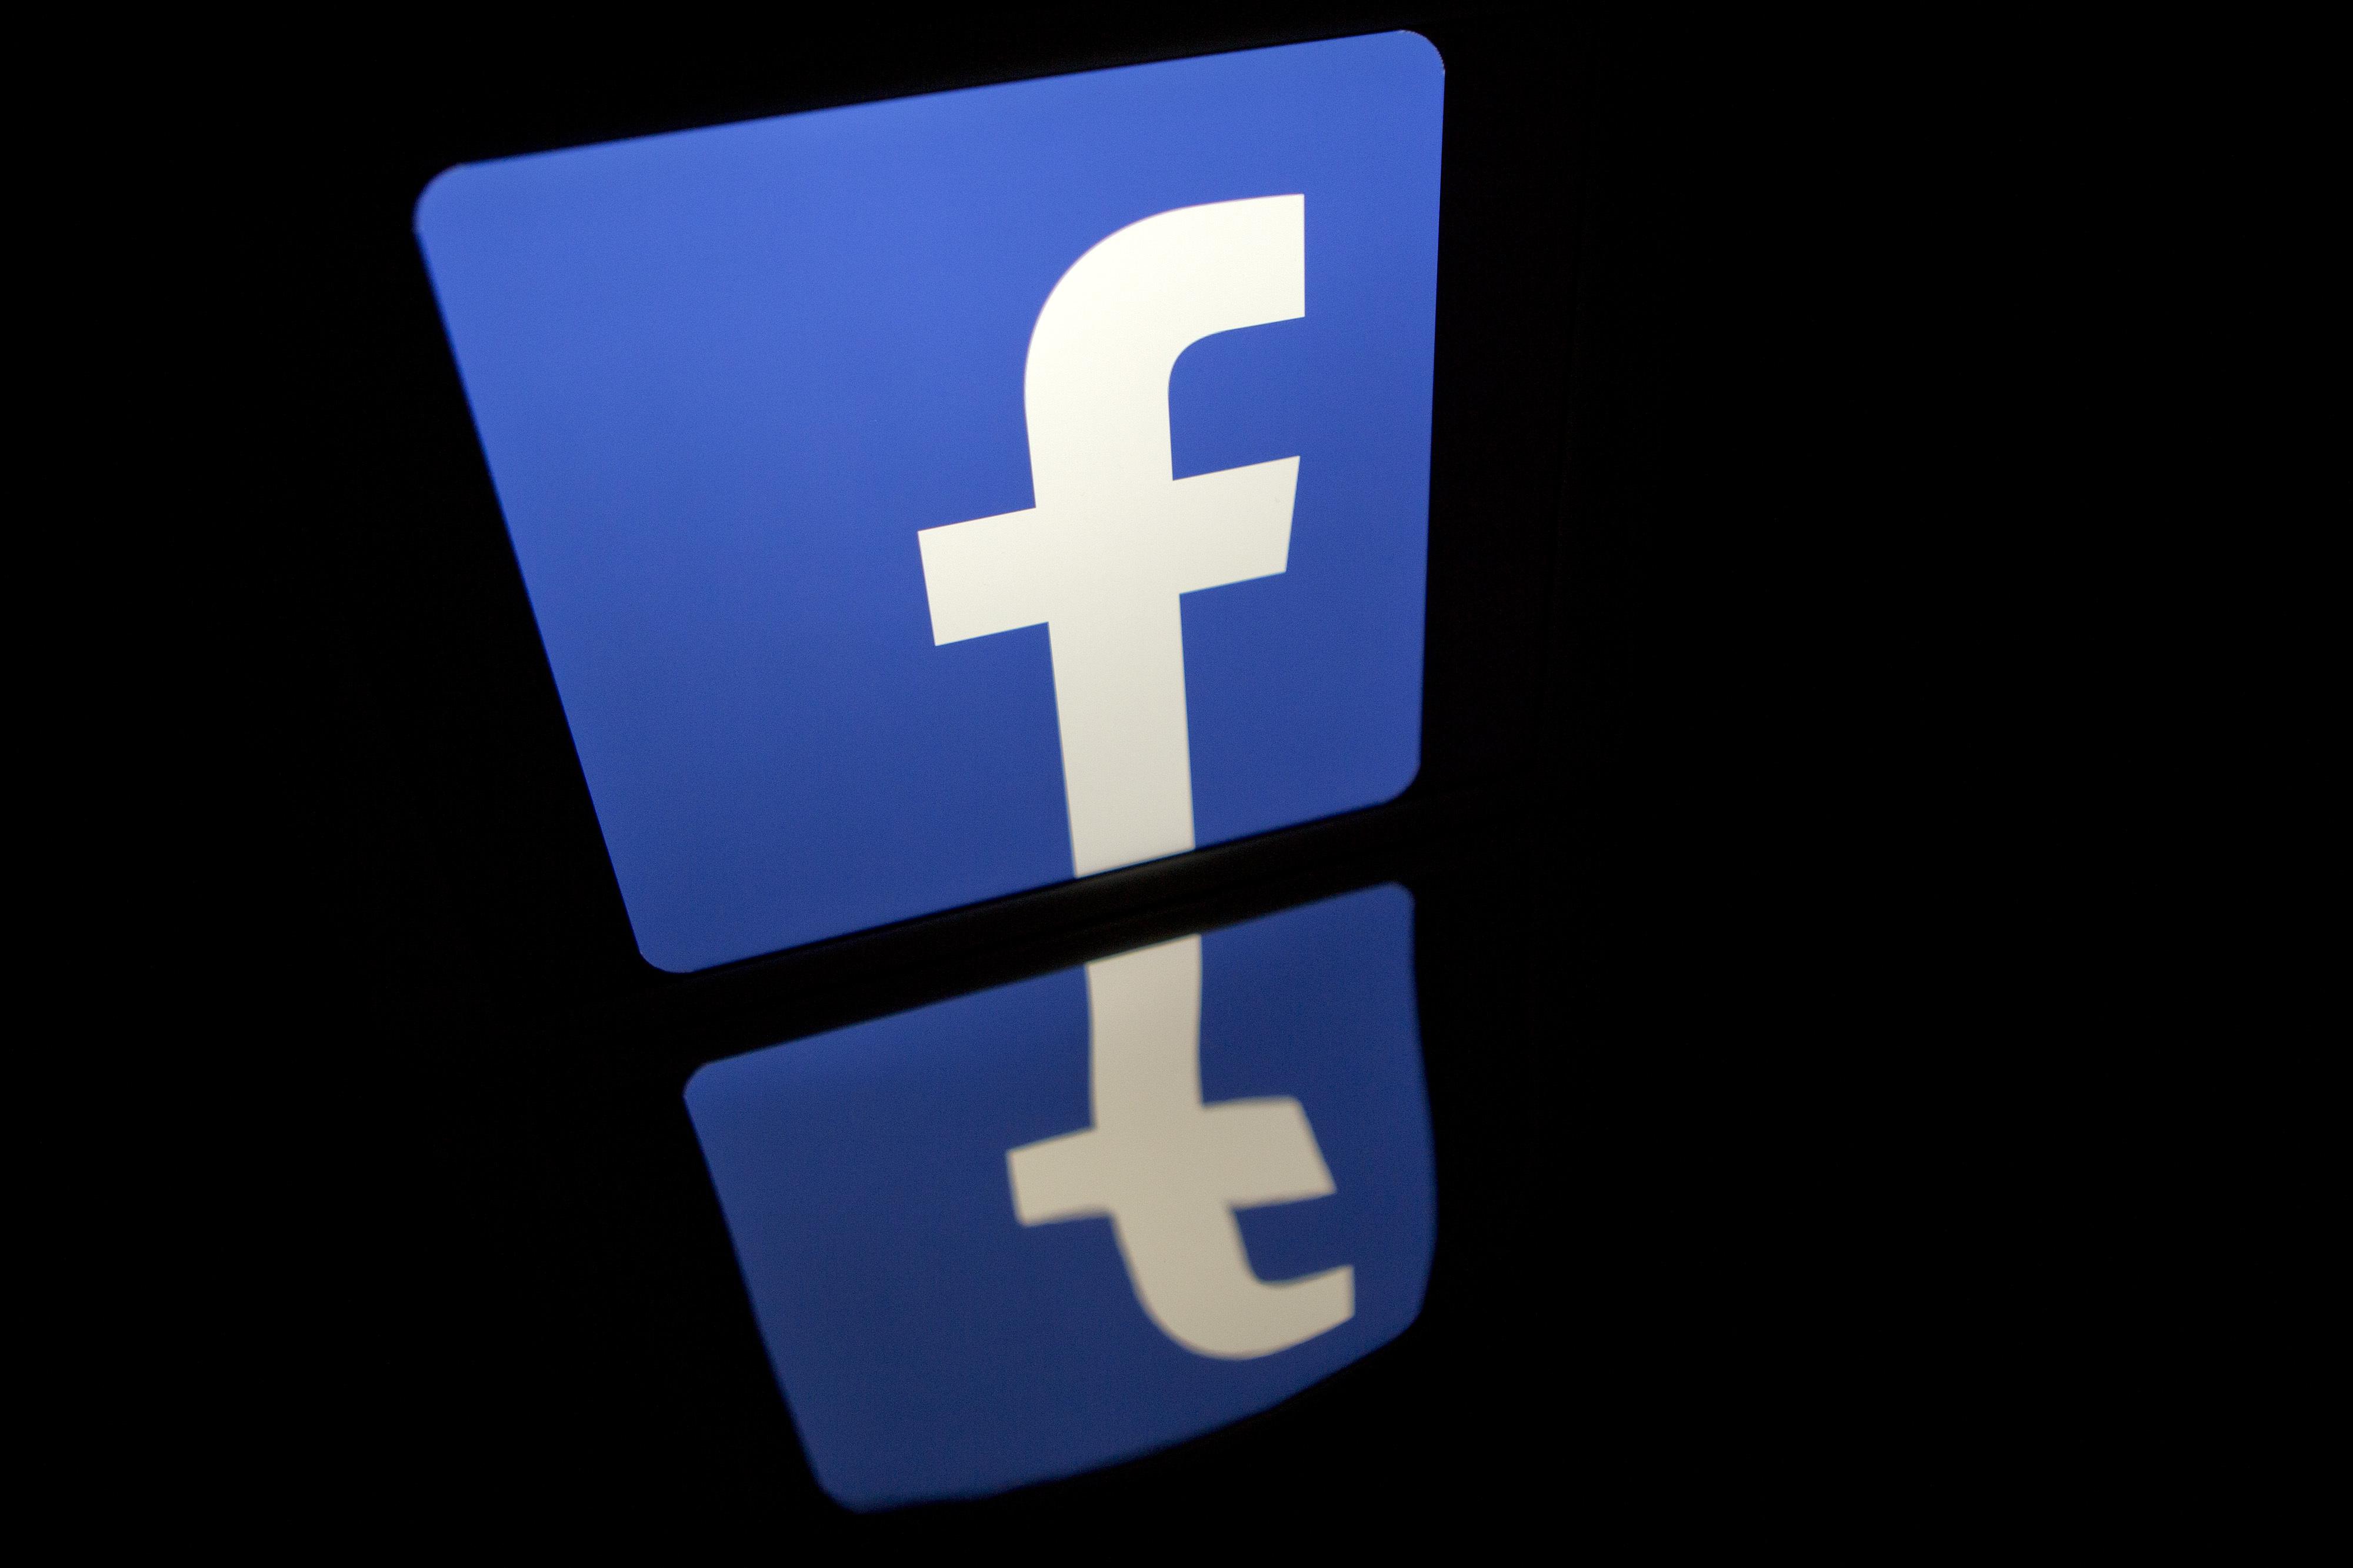 Boicotul advertiserilor împotriva Facebook ia amploare